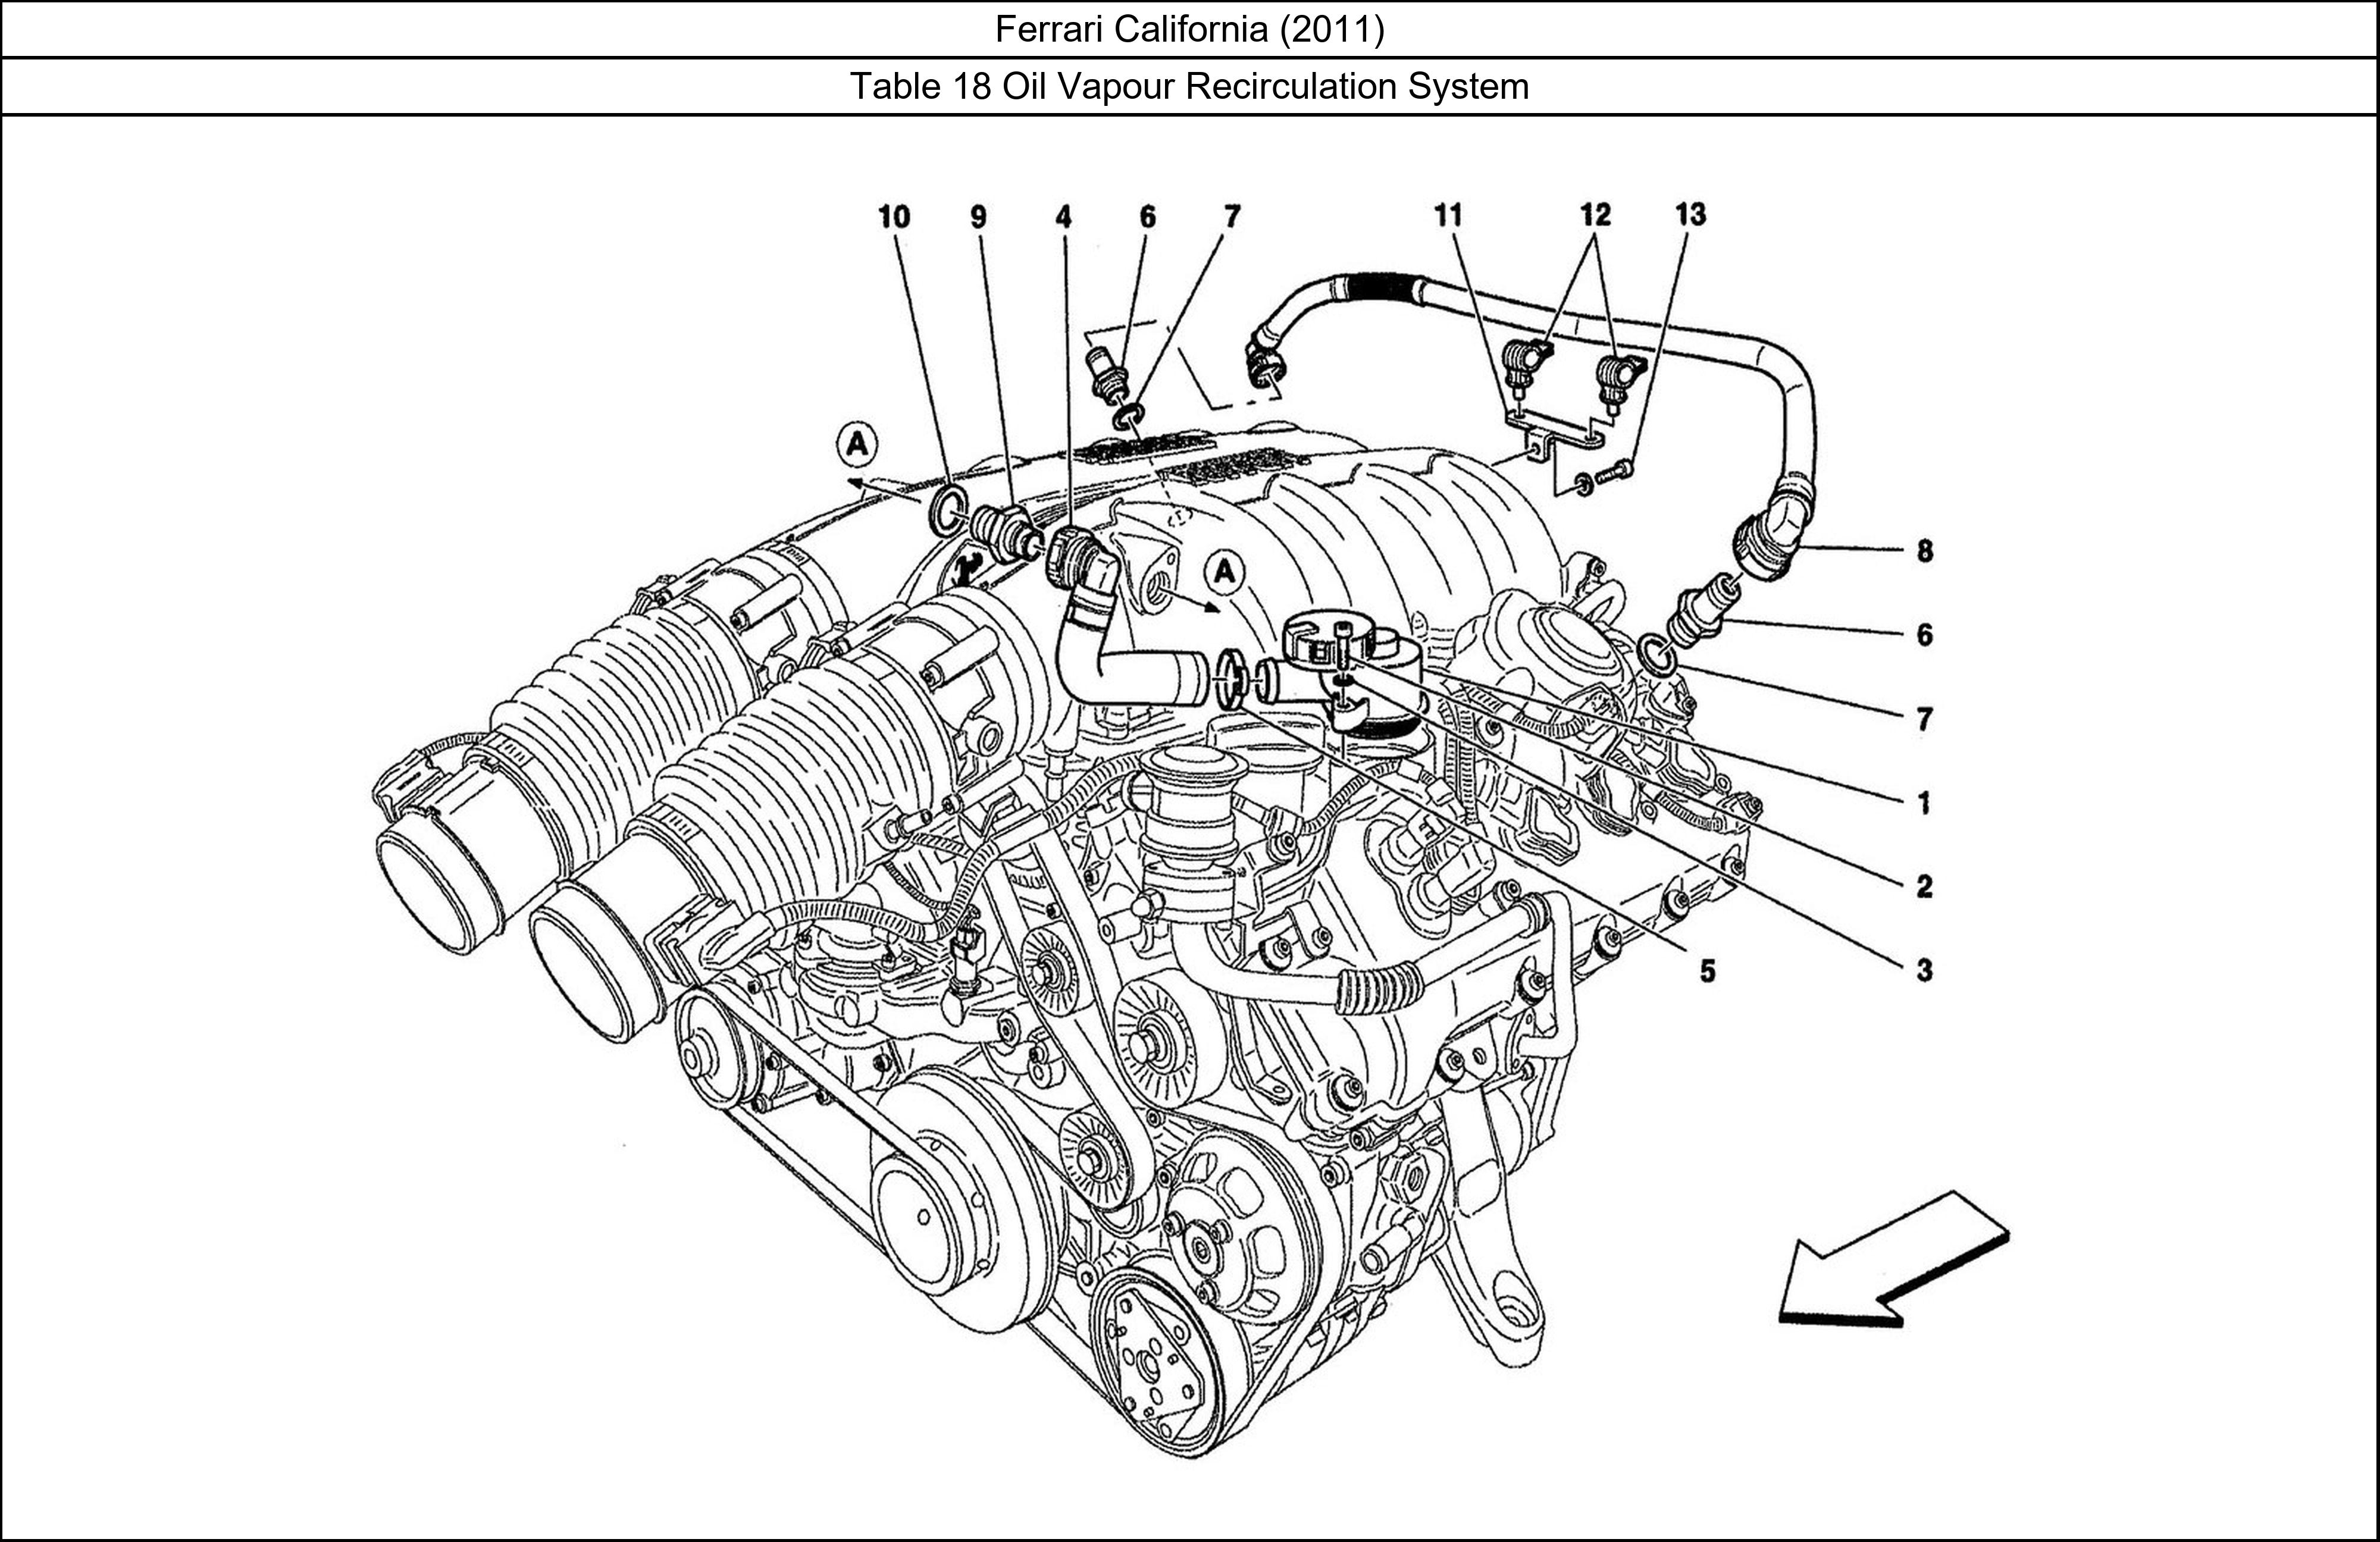 Ferrari Parts Ferrari California (2011) Table 18 Oil Vapour Recirculation System